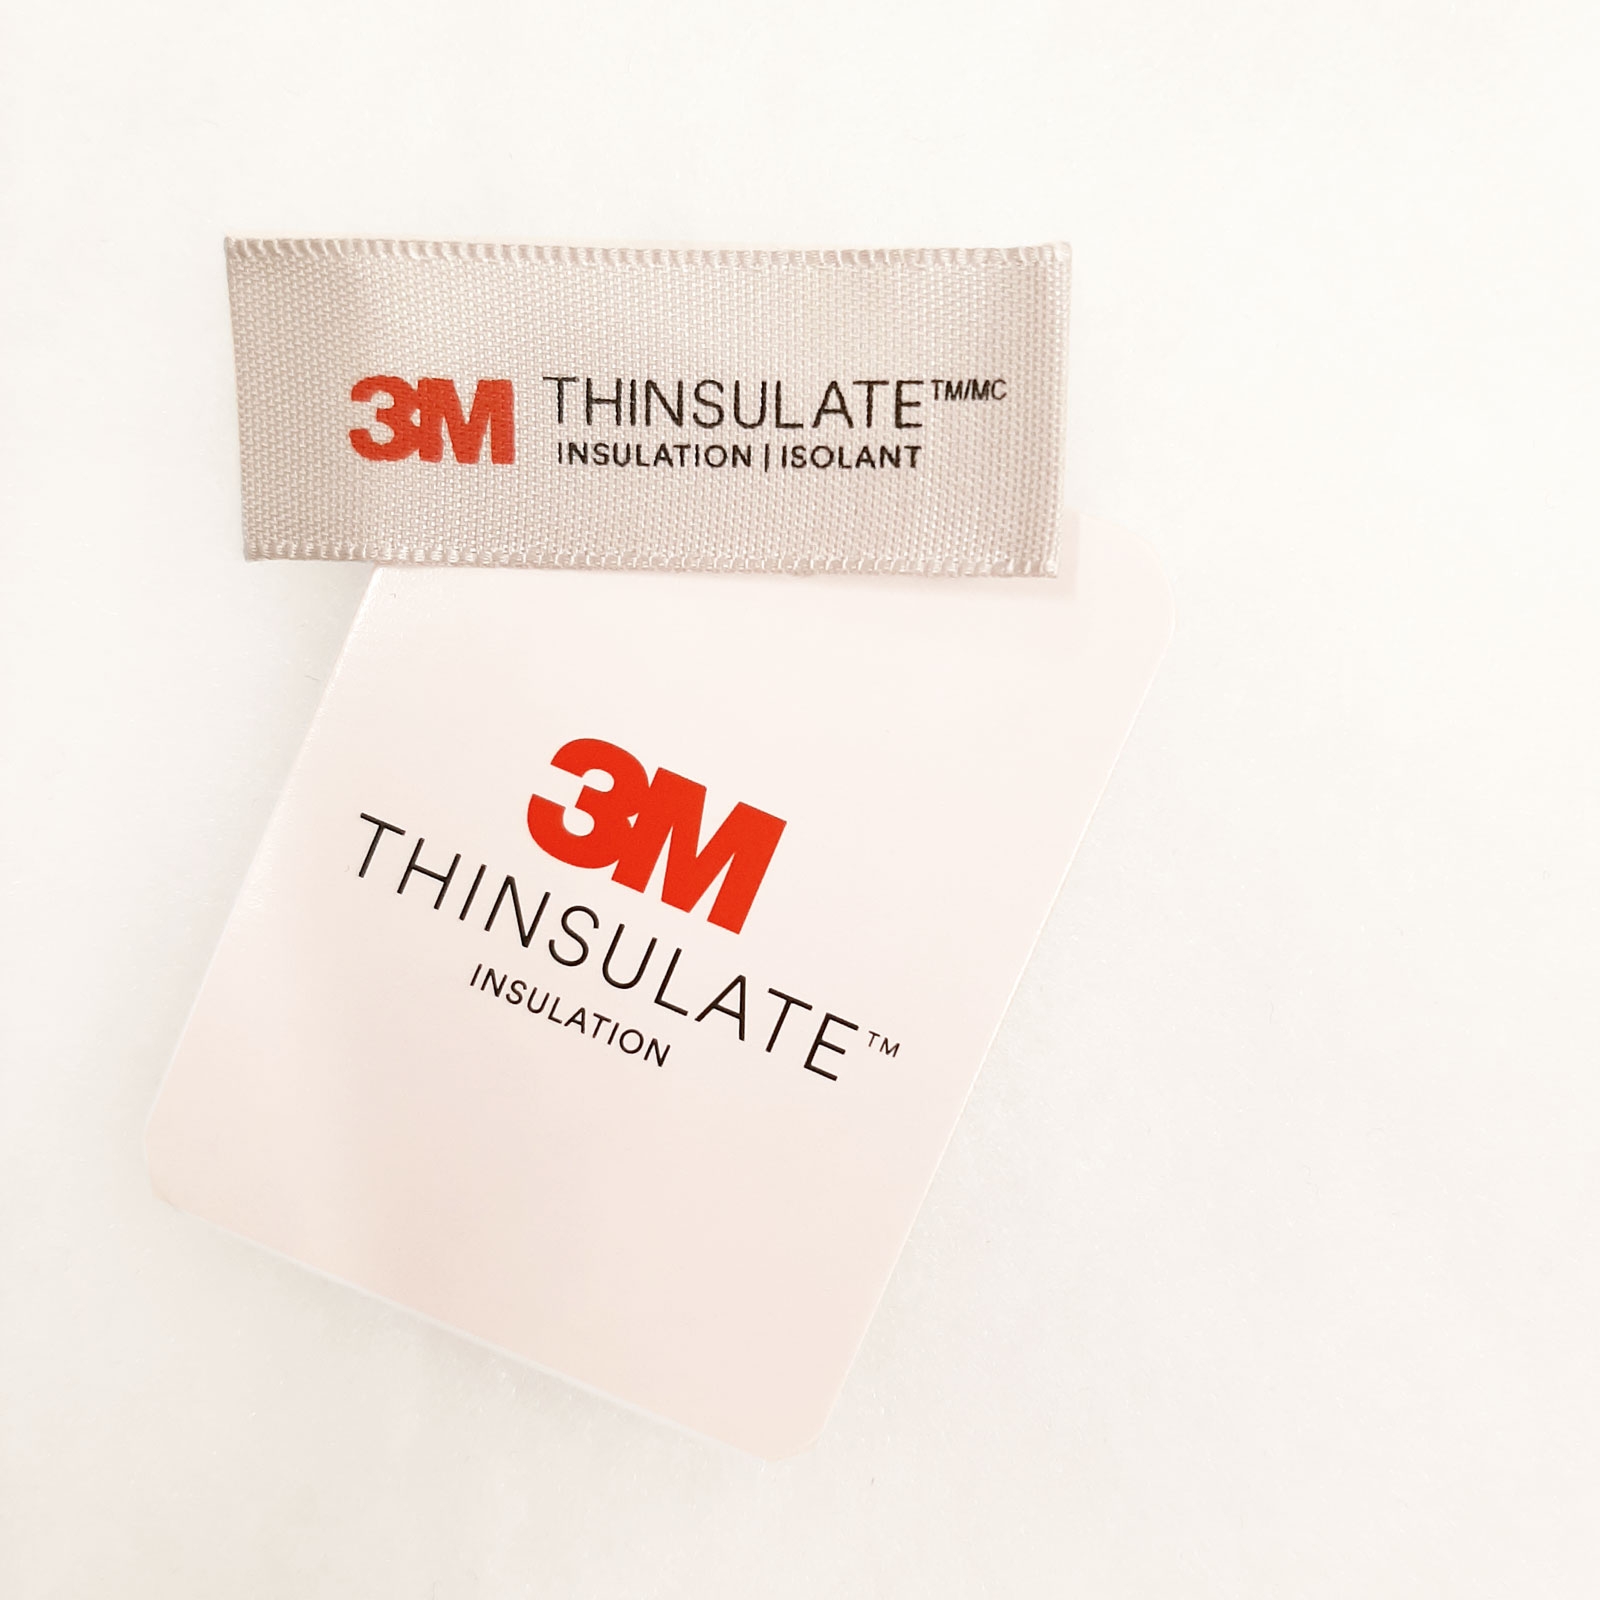 Le Thinsulate 3M est une fibre synthétique utilisée pour la